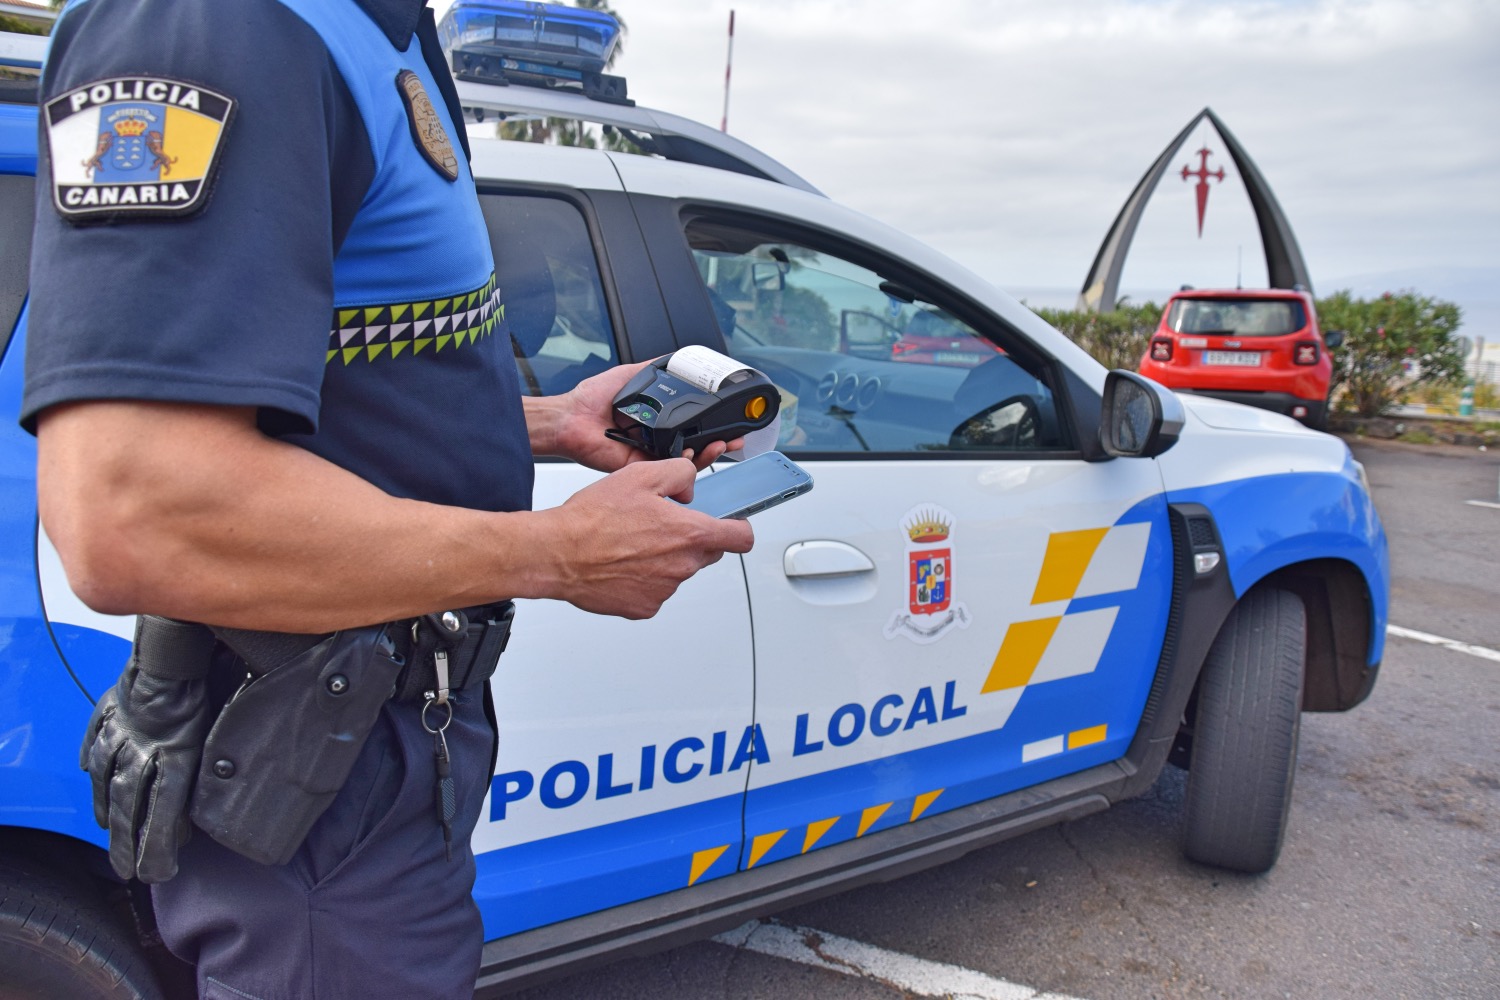 Policía Local de Canarias/ canariasnoticias